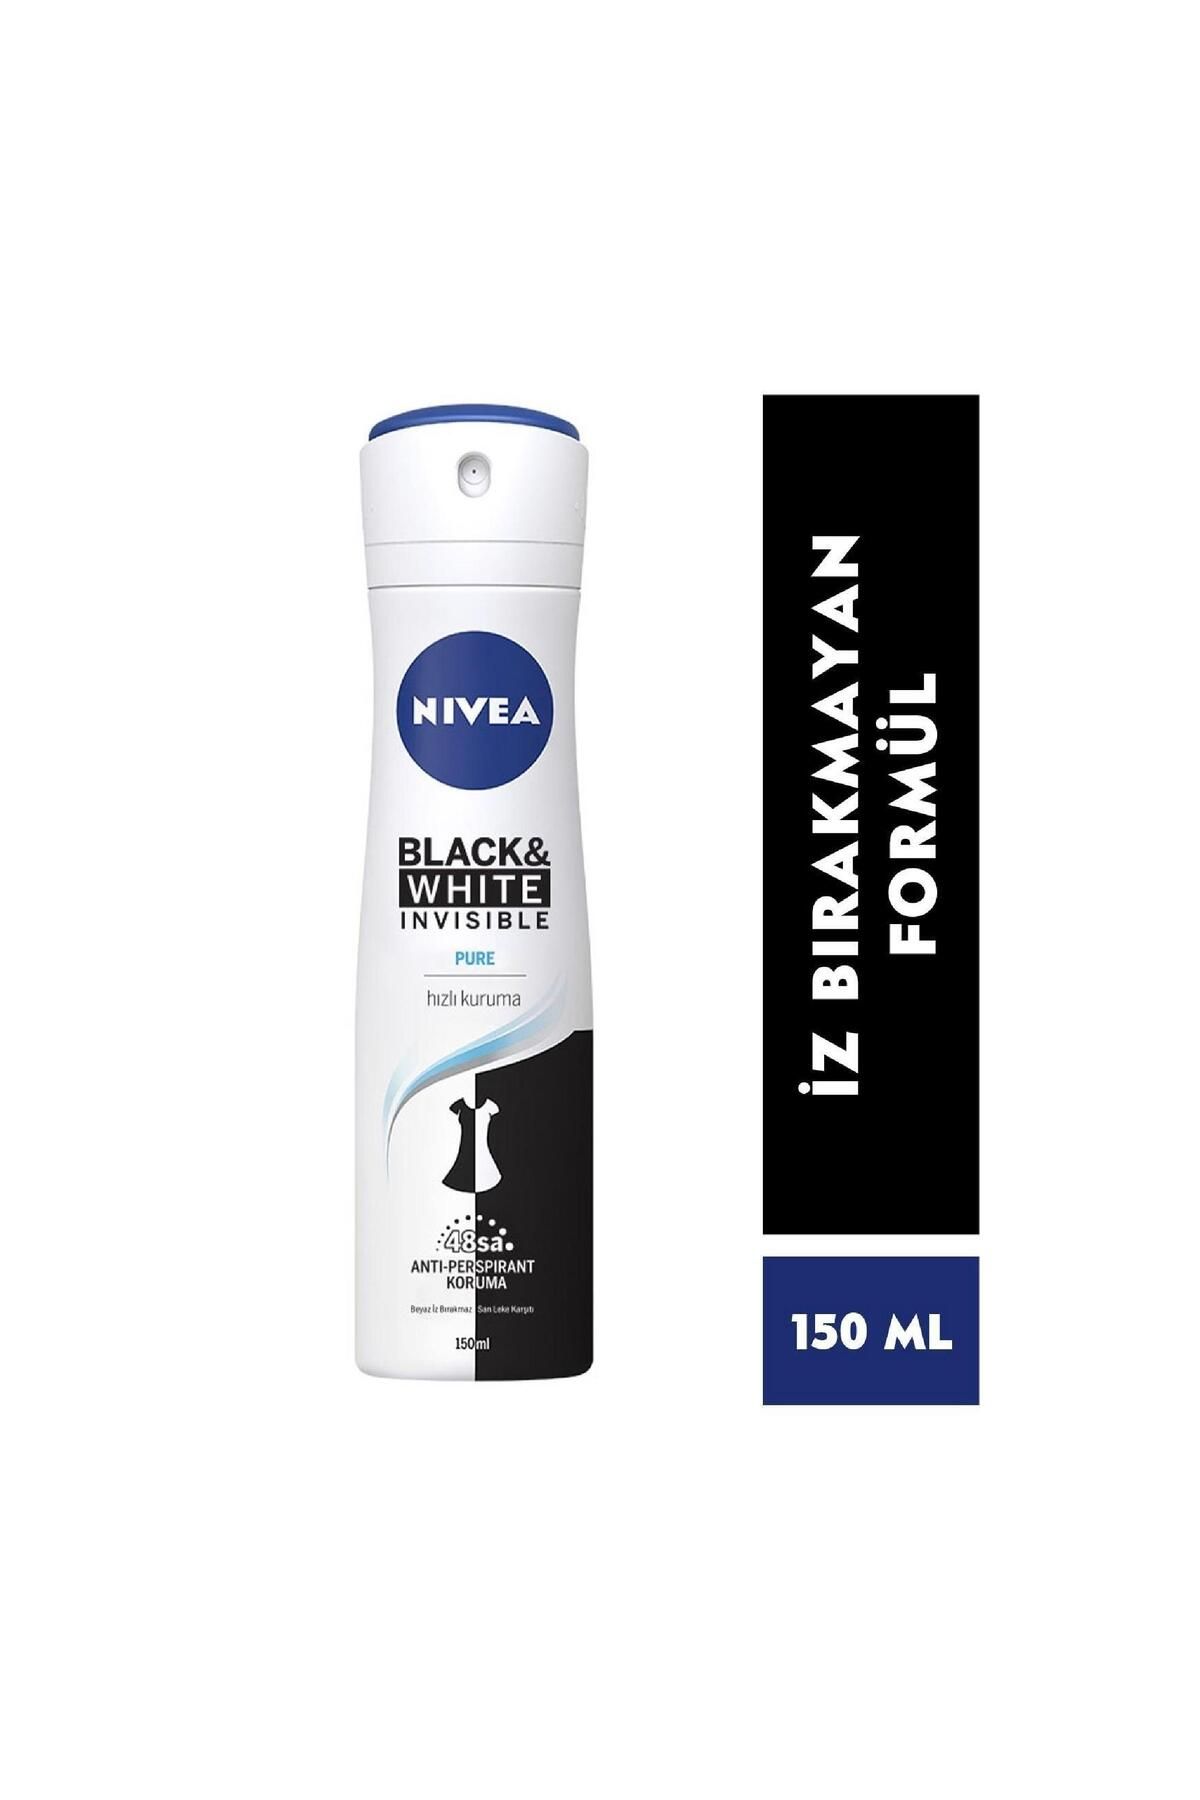 NIVEA Black & White Pure Deodorant 150 ml